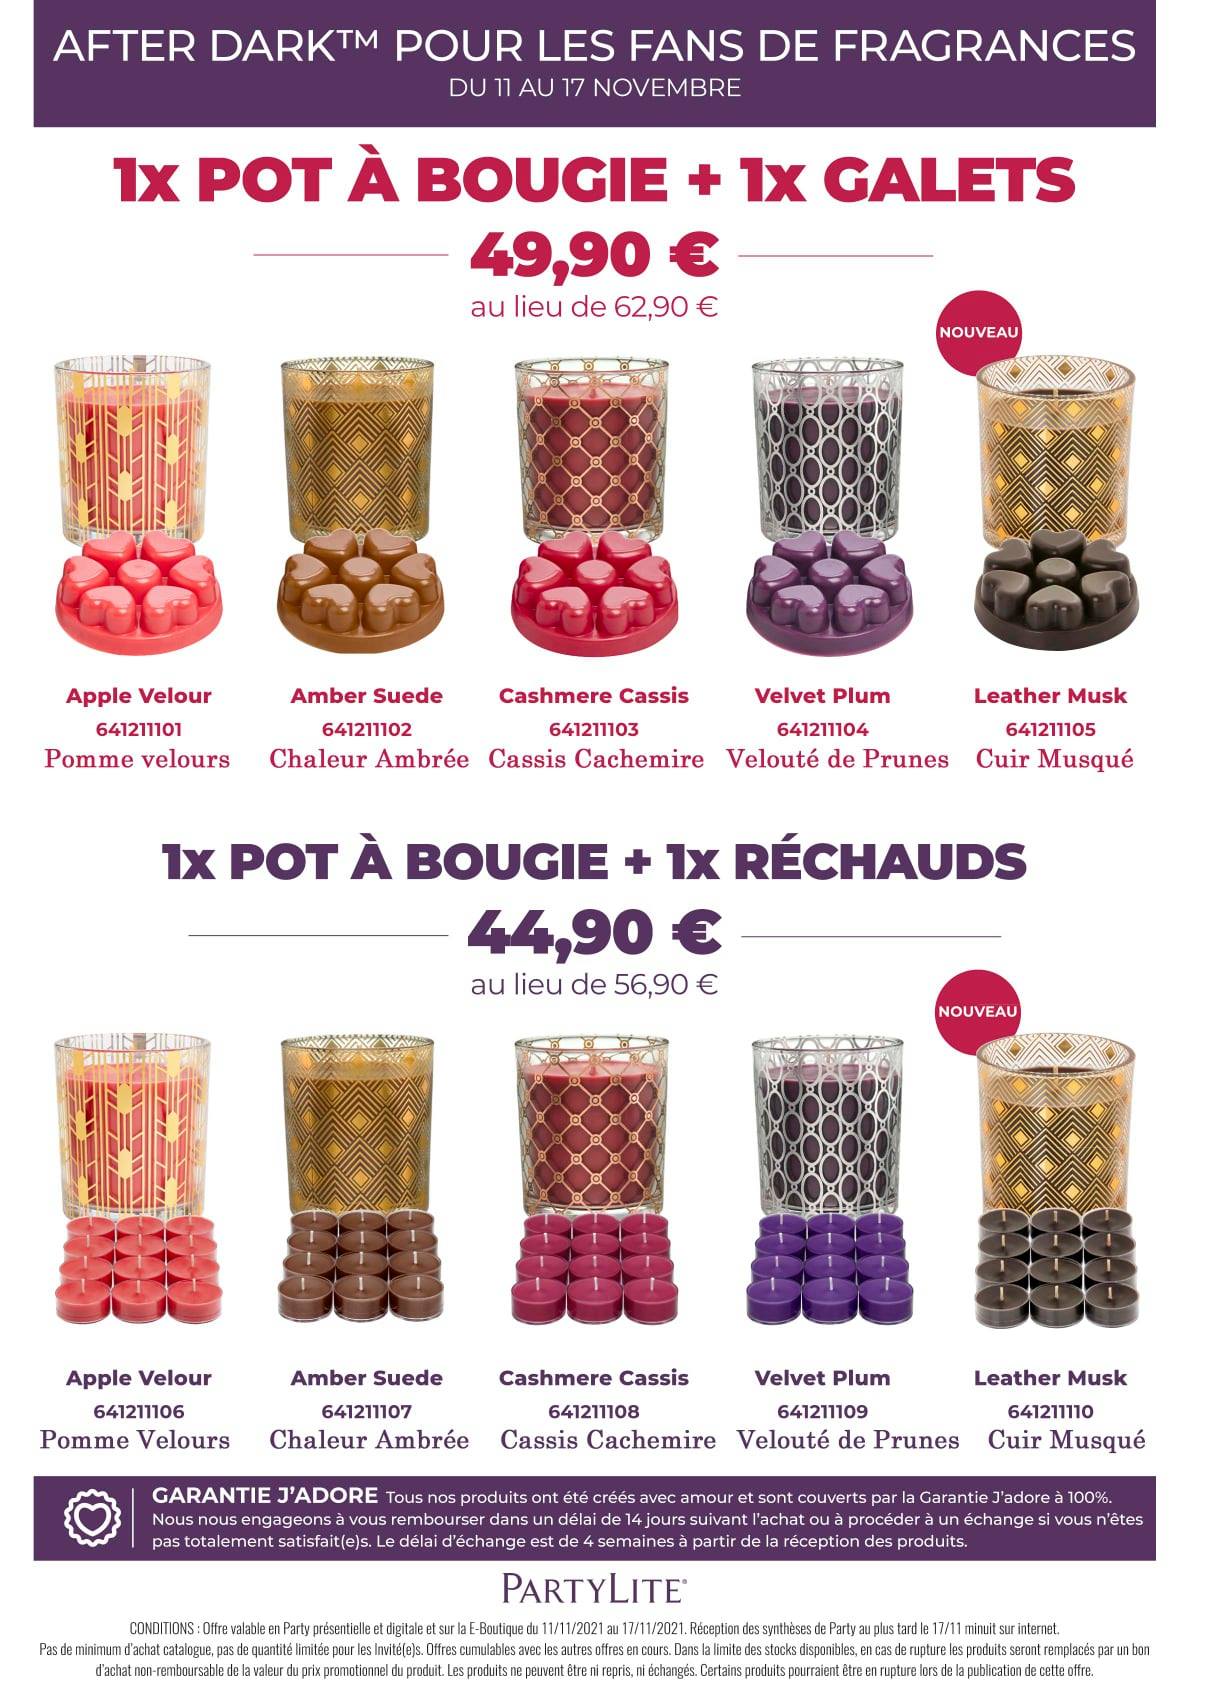 PARTYLITE LOT DE 12 bougies chauffe-plat After Dark EUR 53,91